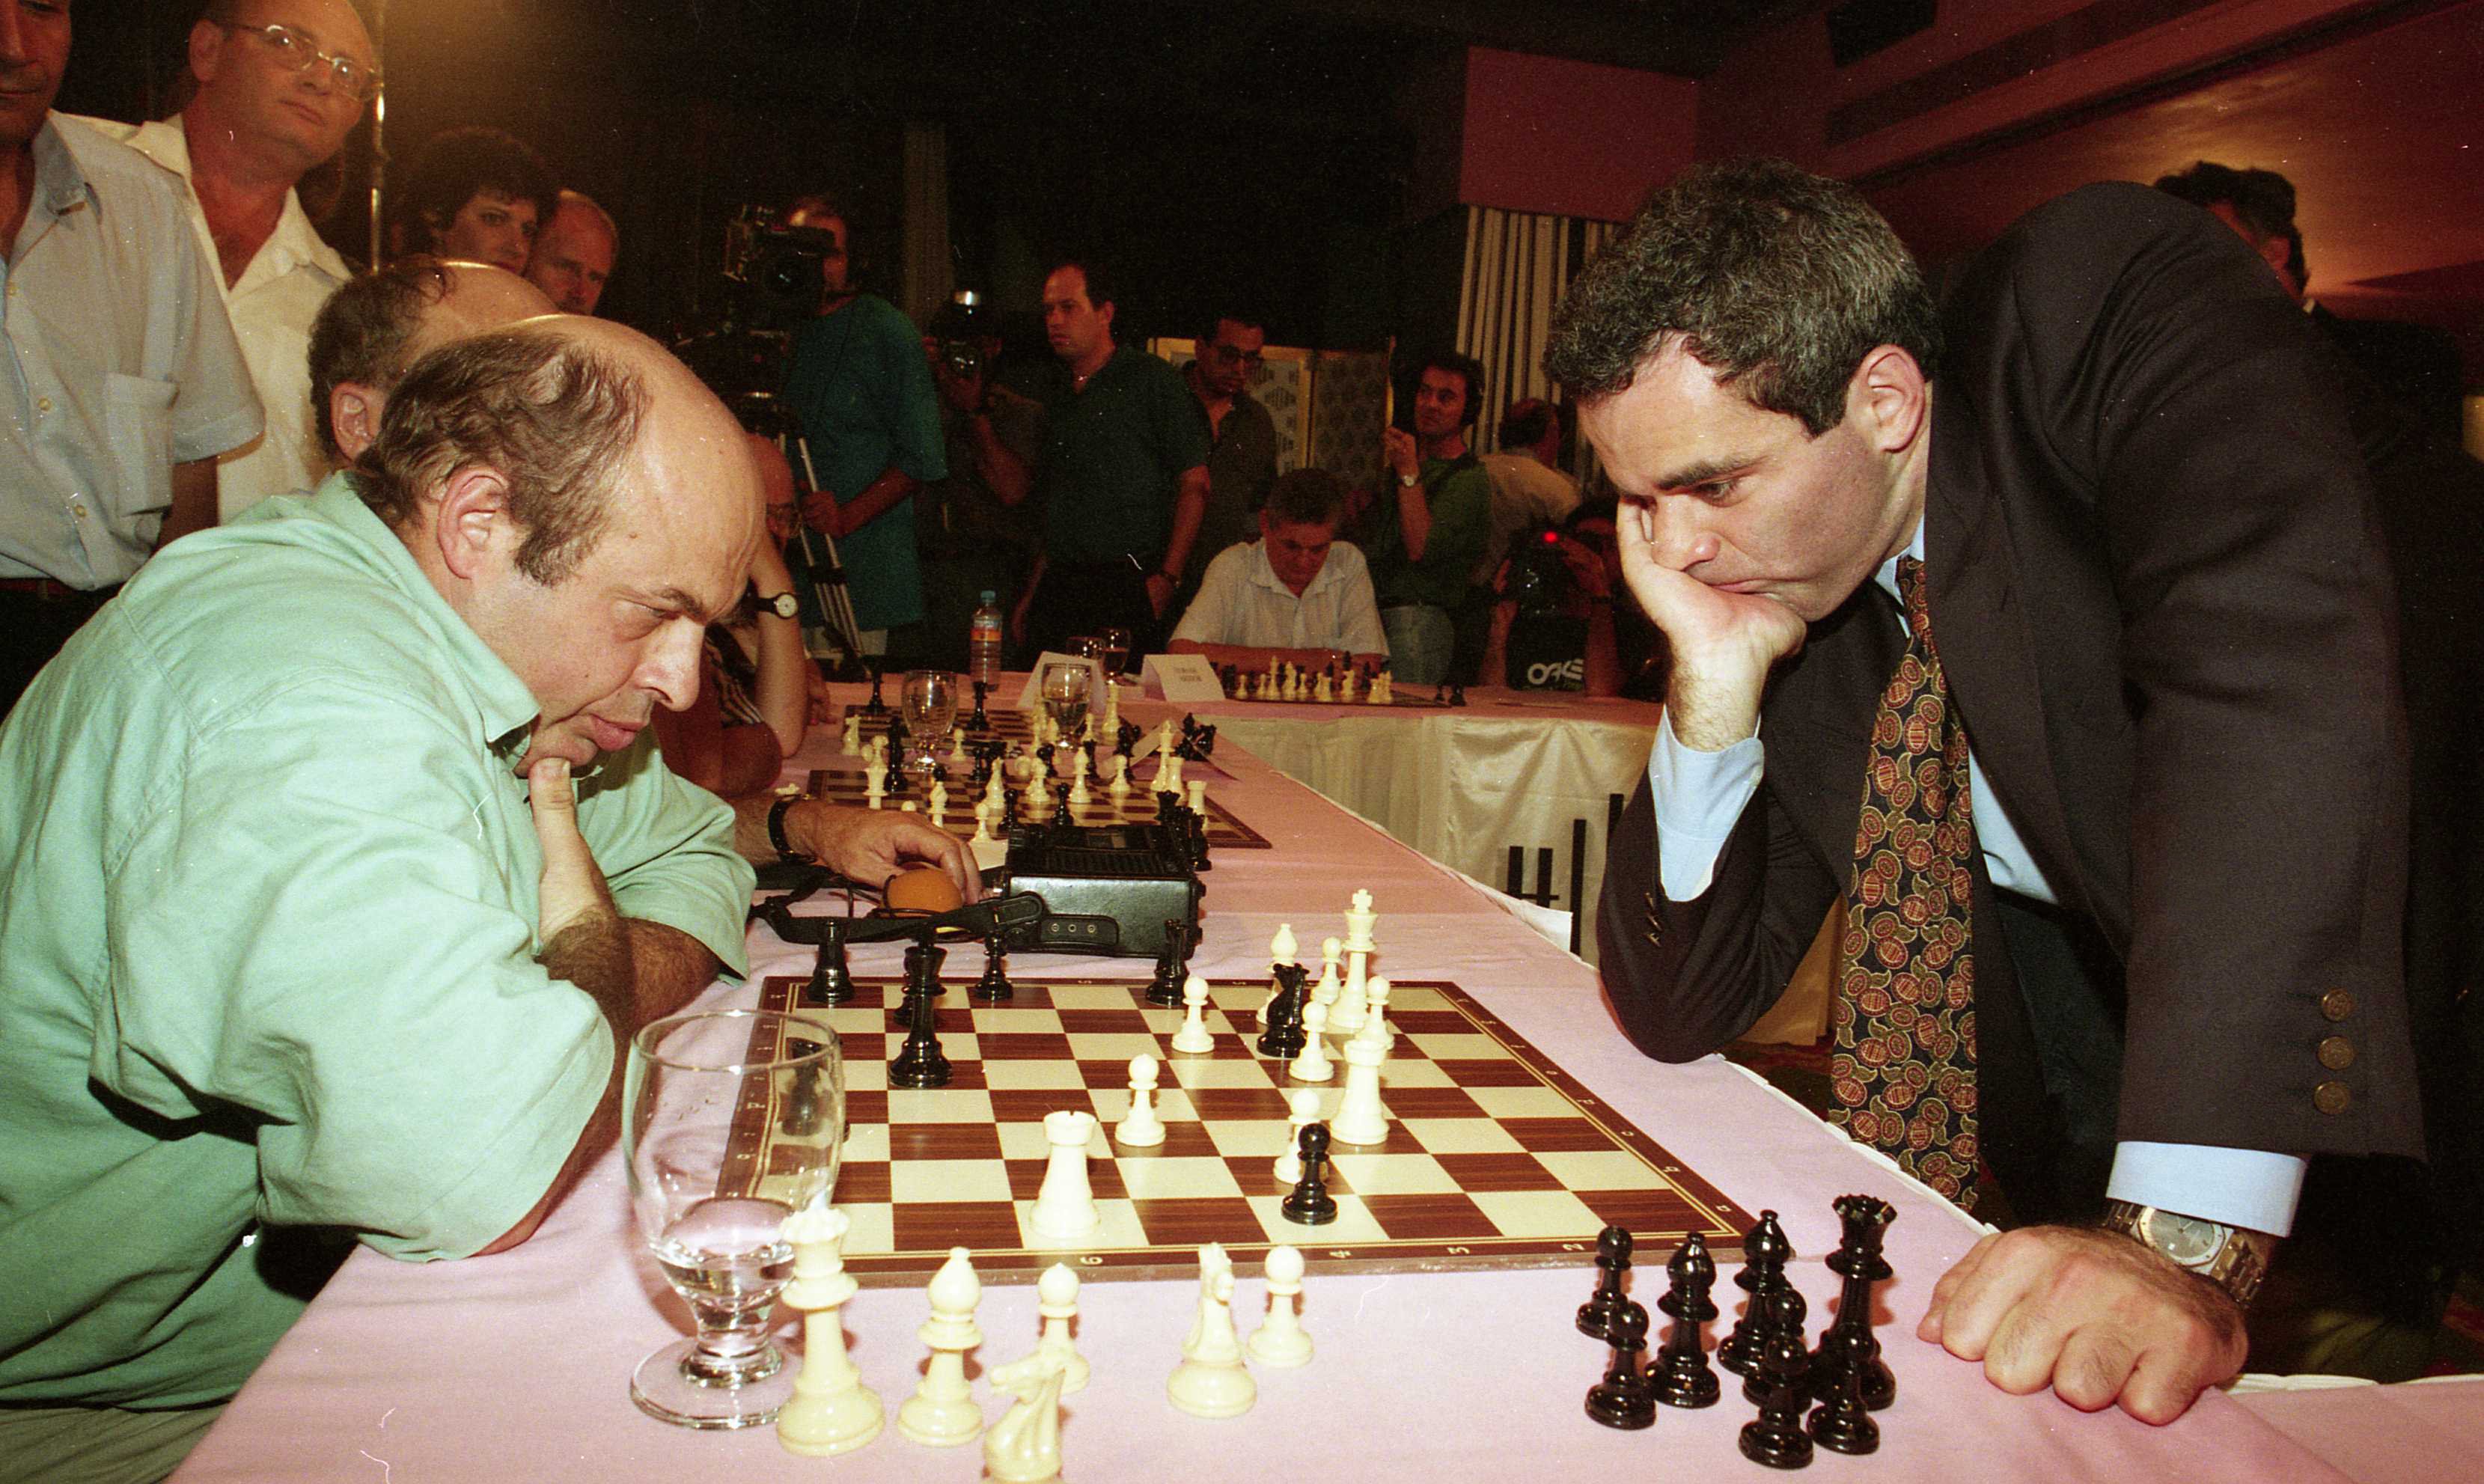 Kasparov #chess  Chess, Chess board, Garry kasparov